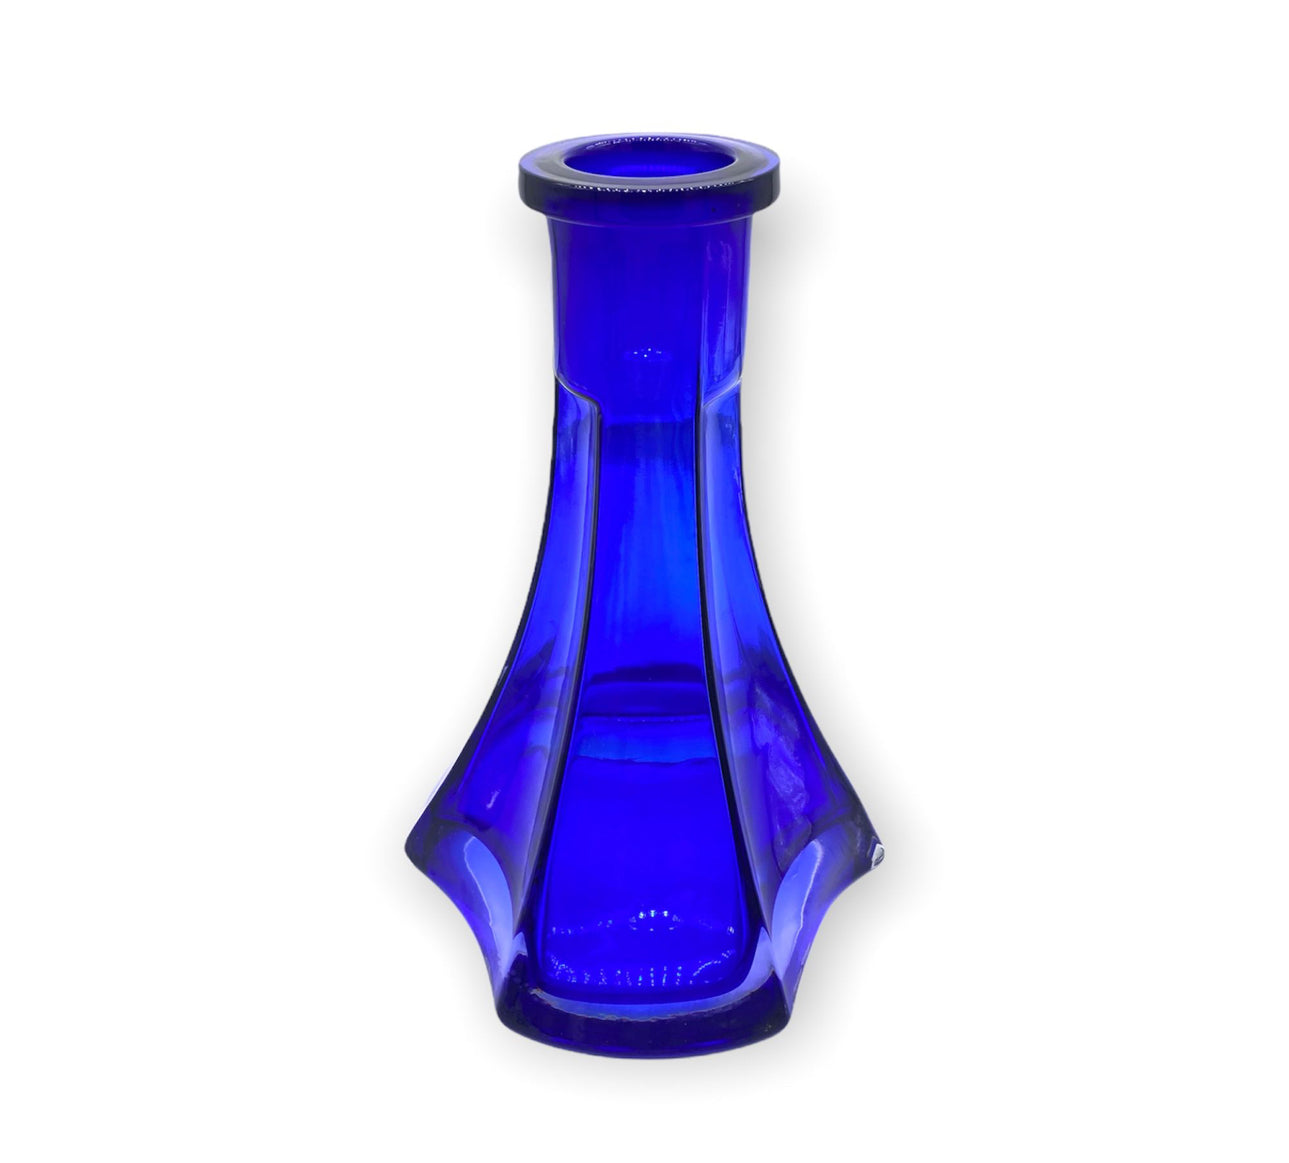 Zahrah Premium Handmade Glass Base- Pyramid Shape